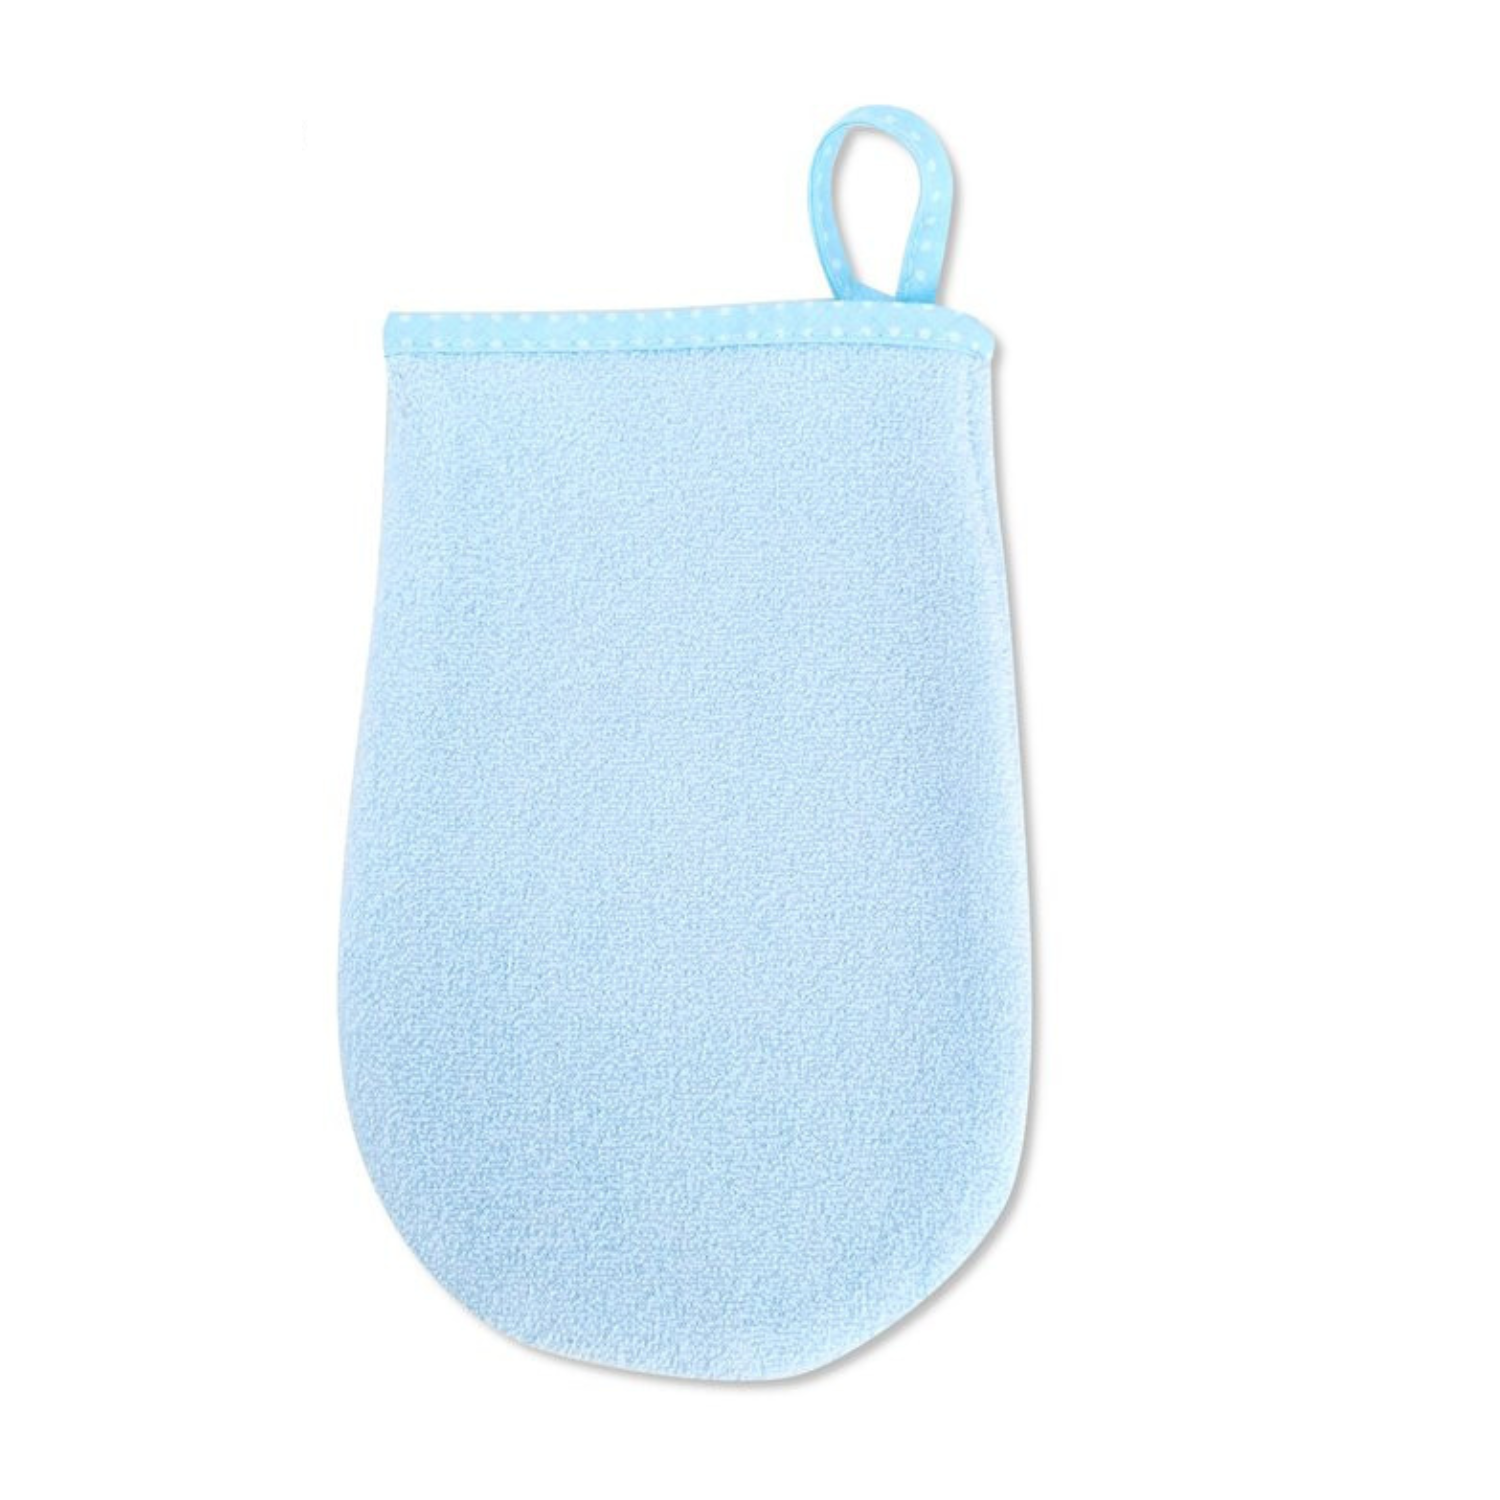 Manusa de baie pentru bebelusi, 12 x 21 cm, Blue, MiniNu